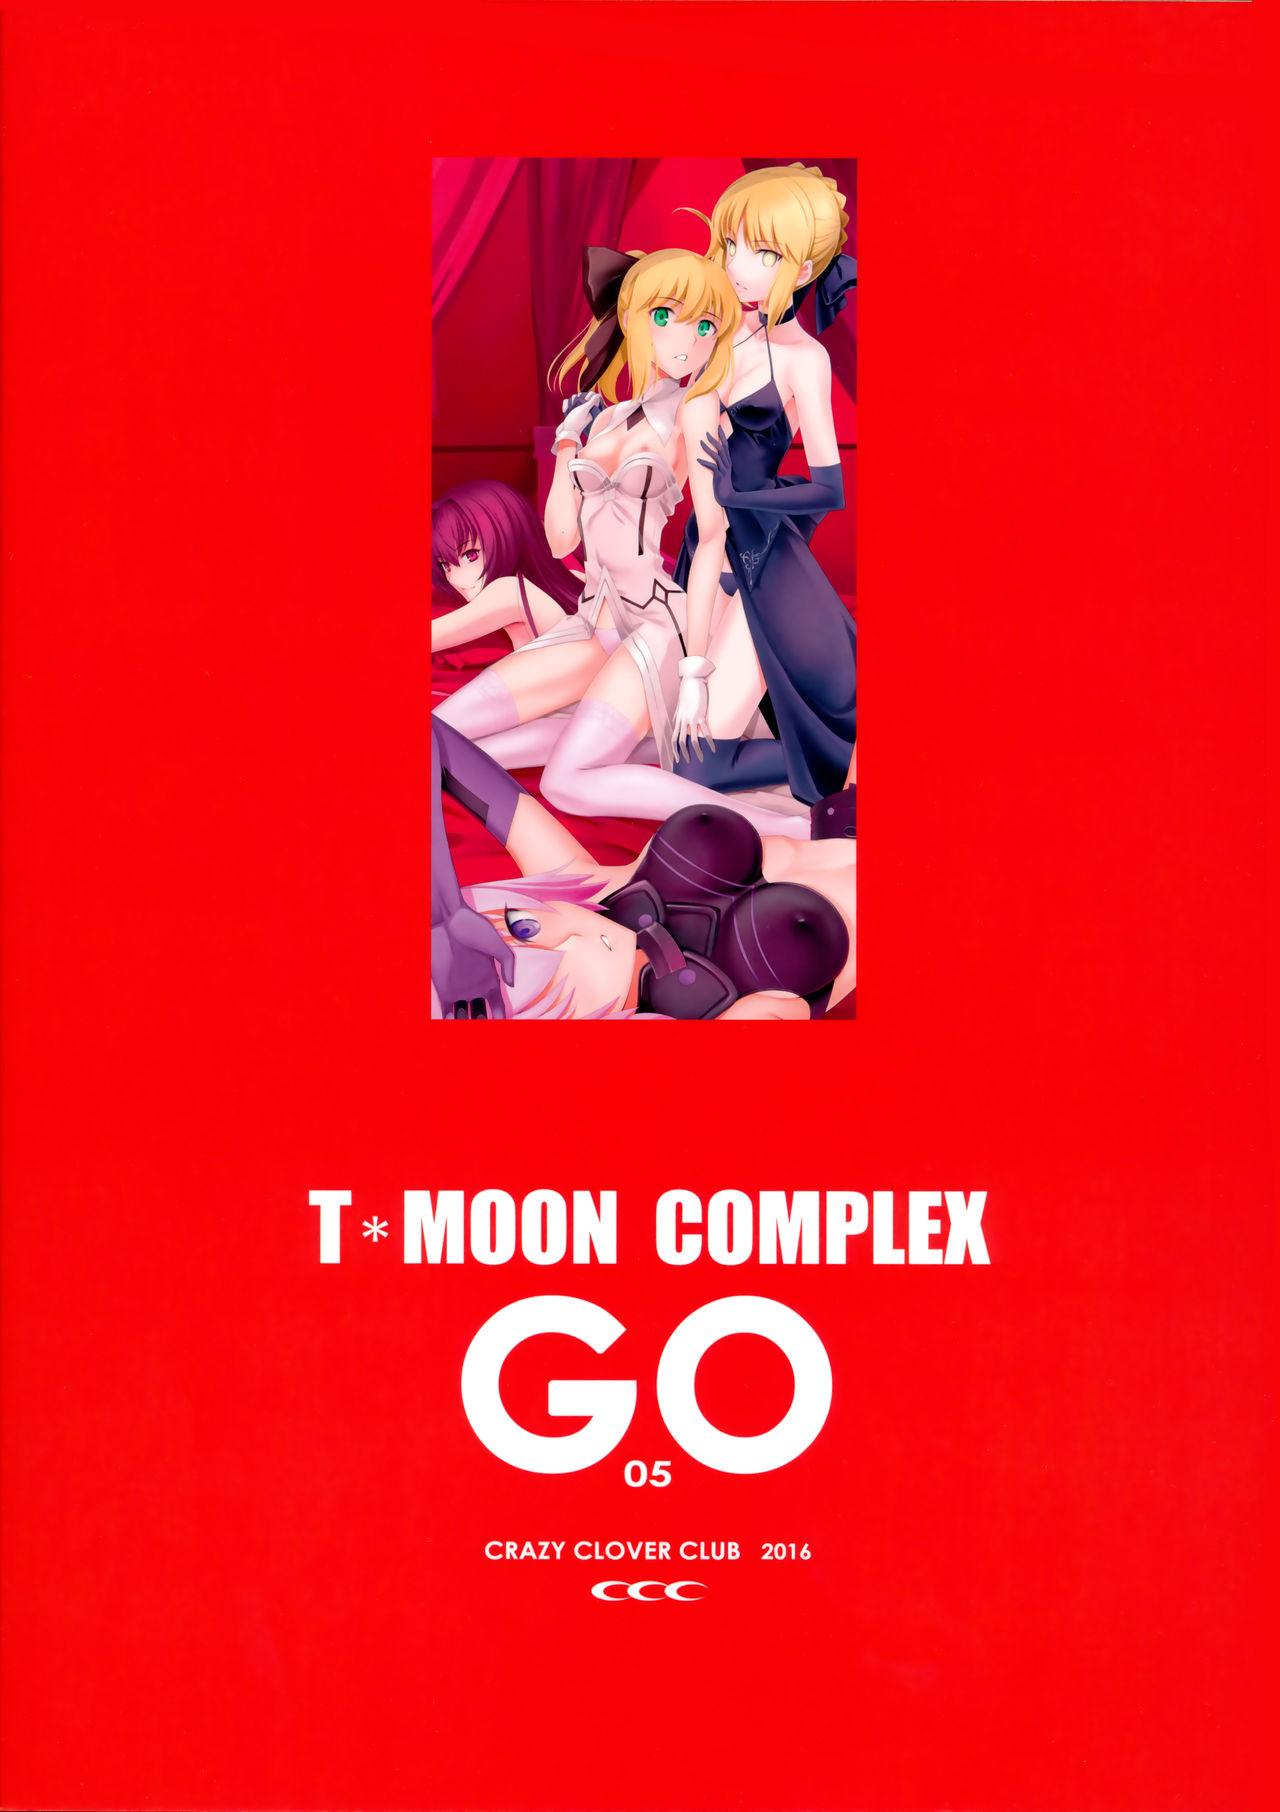 T*MOON COMPLEX GO 05 34